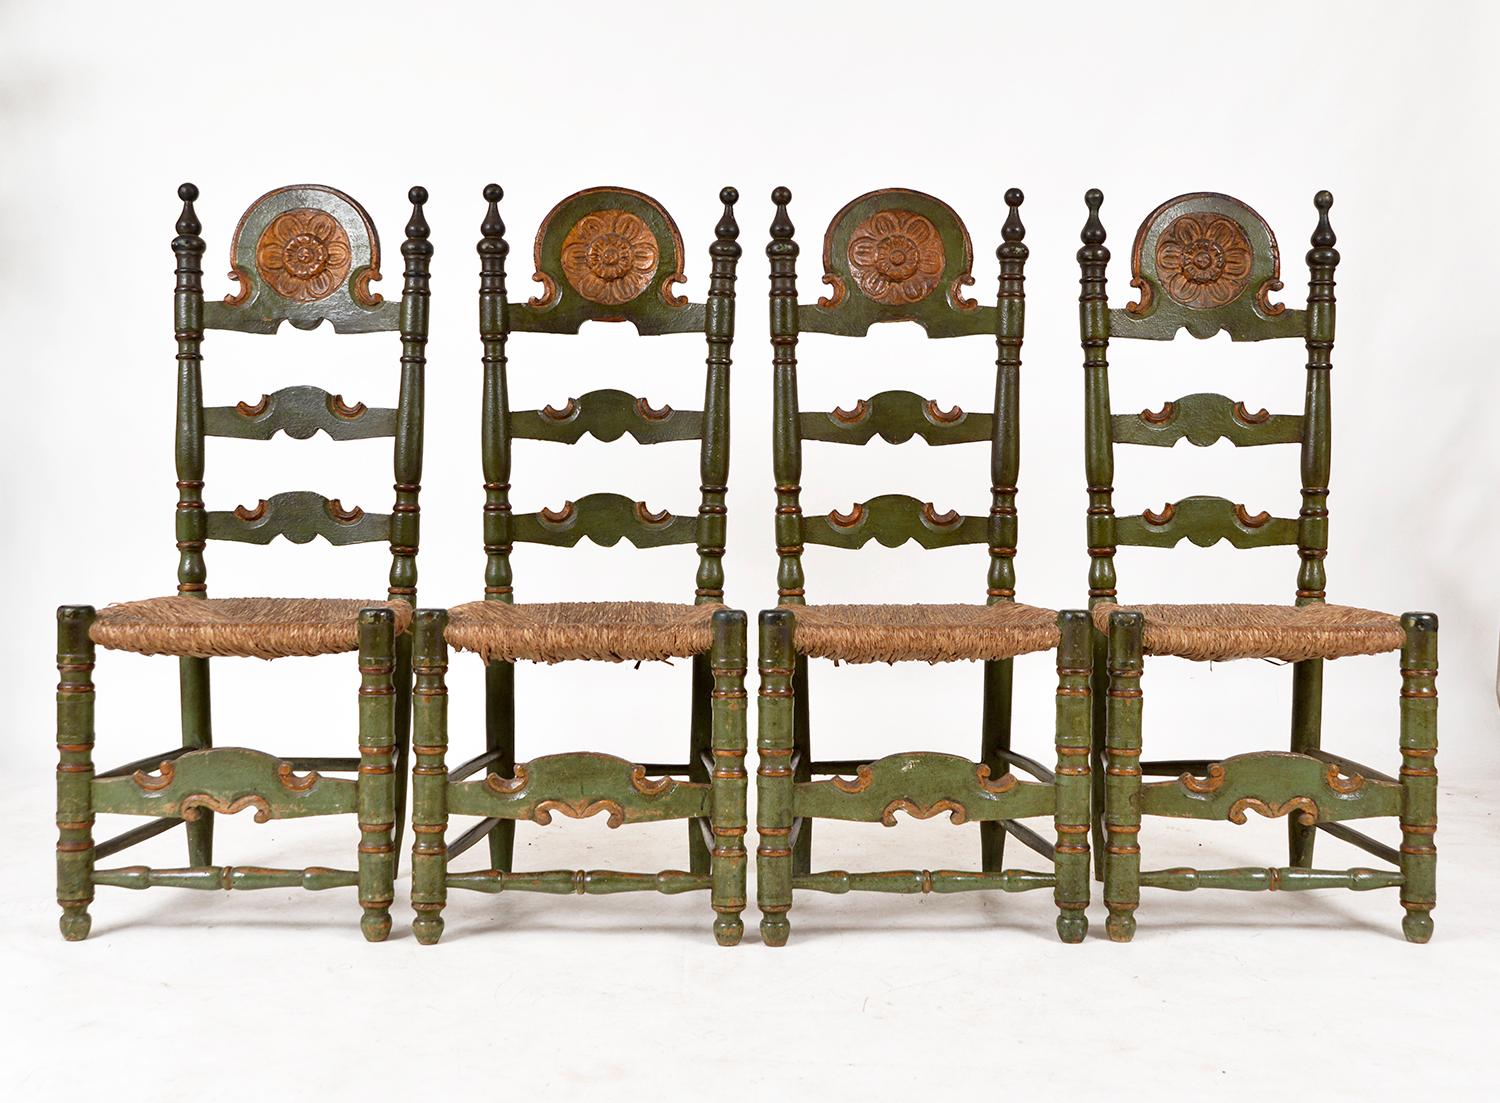 Ein atemberaubender Satz von vier andalusischen Stühlen mit Leiterrücken in originalem Polychromie-Dunkelgrün und Altgold mit Binsen-Sitzen - eine atemberaubende Farbkombination mit einer höchst ansprechenden Patina. Jeder Stuhl hat eine hübsche